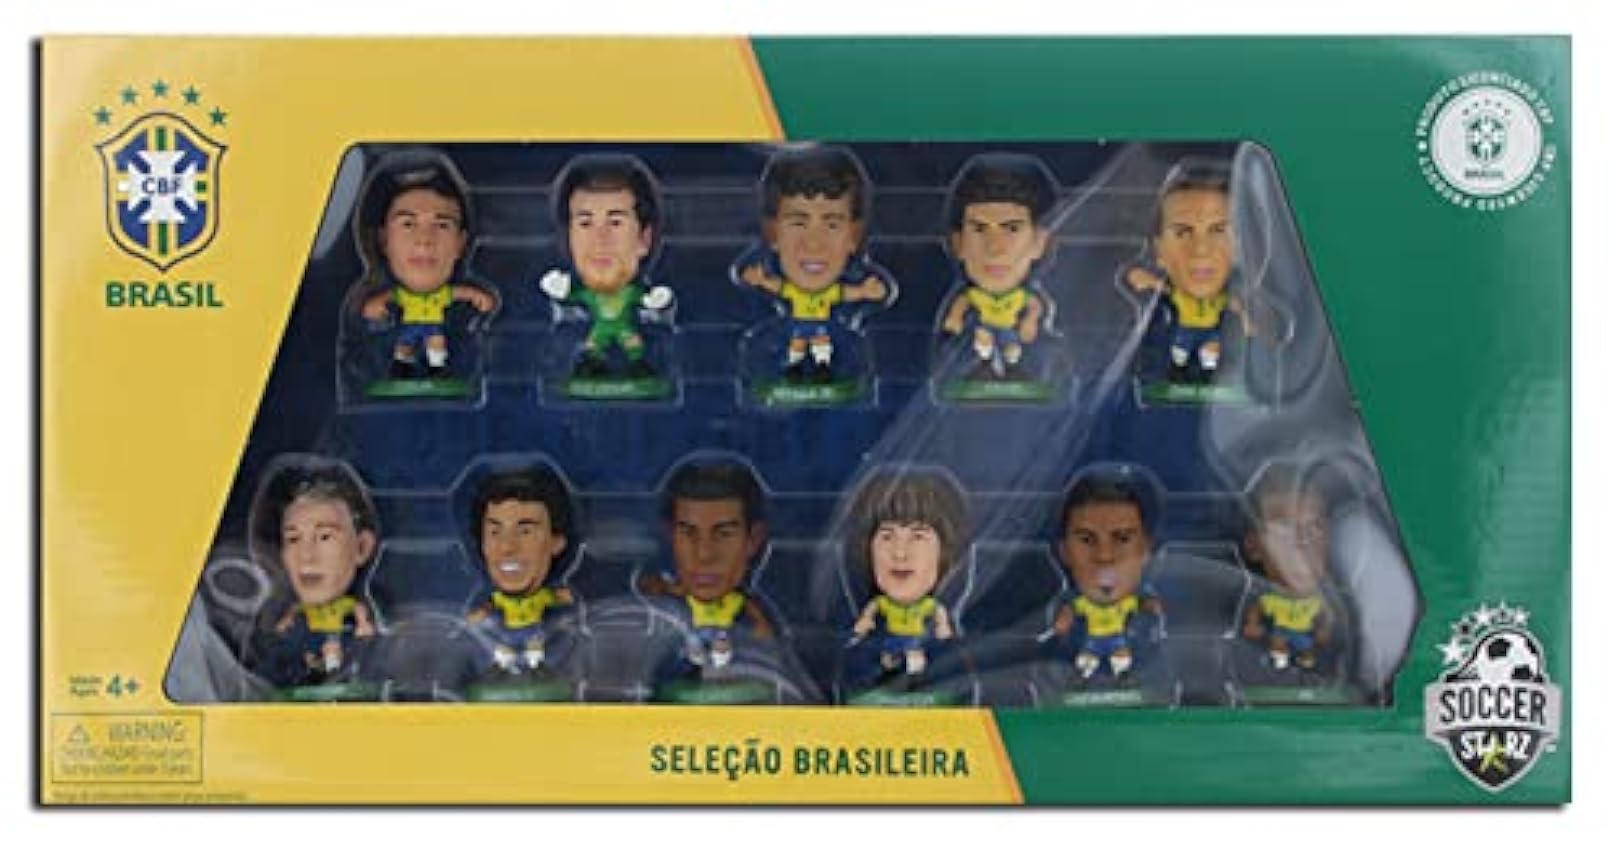 SoccerStarz - 202561 - Figurine - Sport - Pack De 11 Figurines Officielles De L´équipe De Brésil cFyRFMEZ